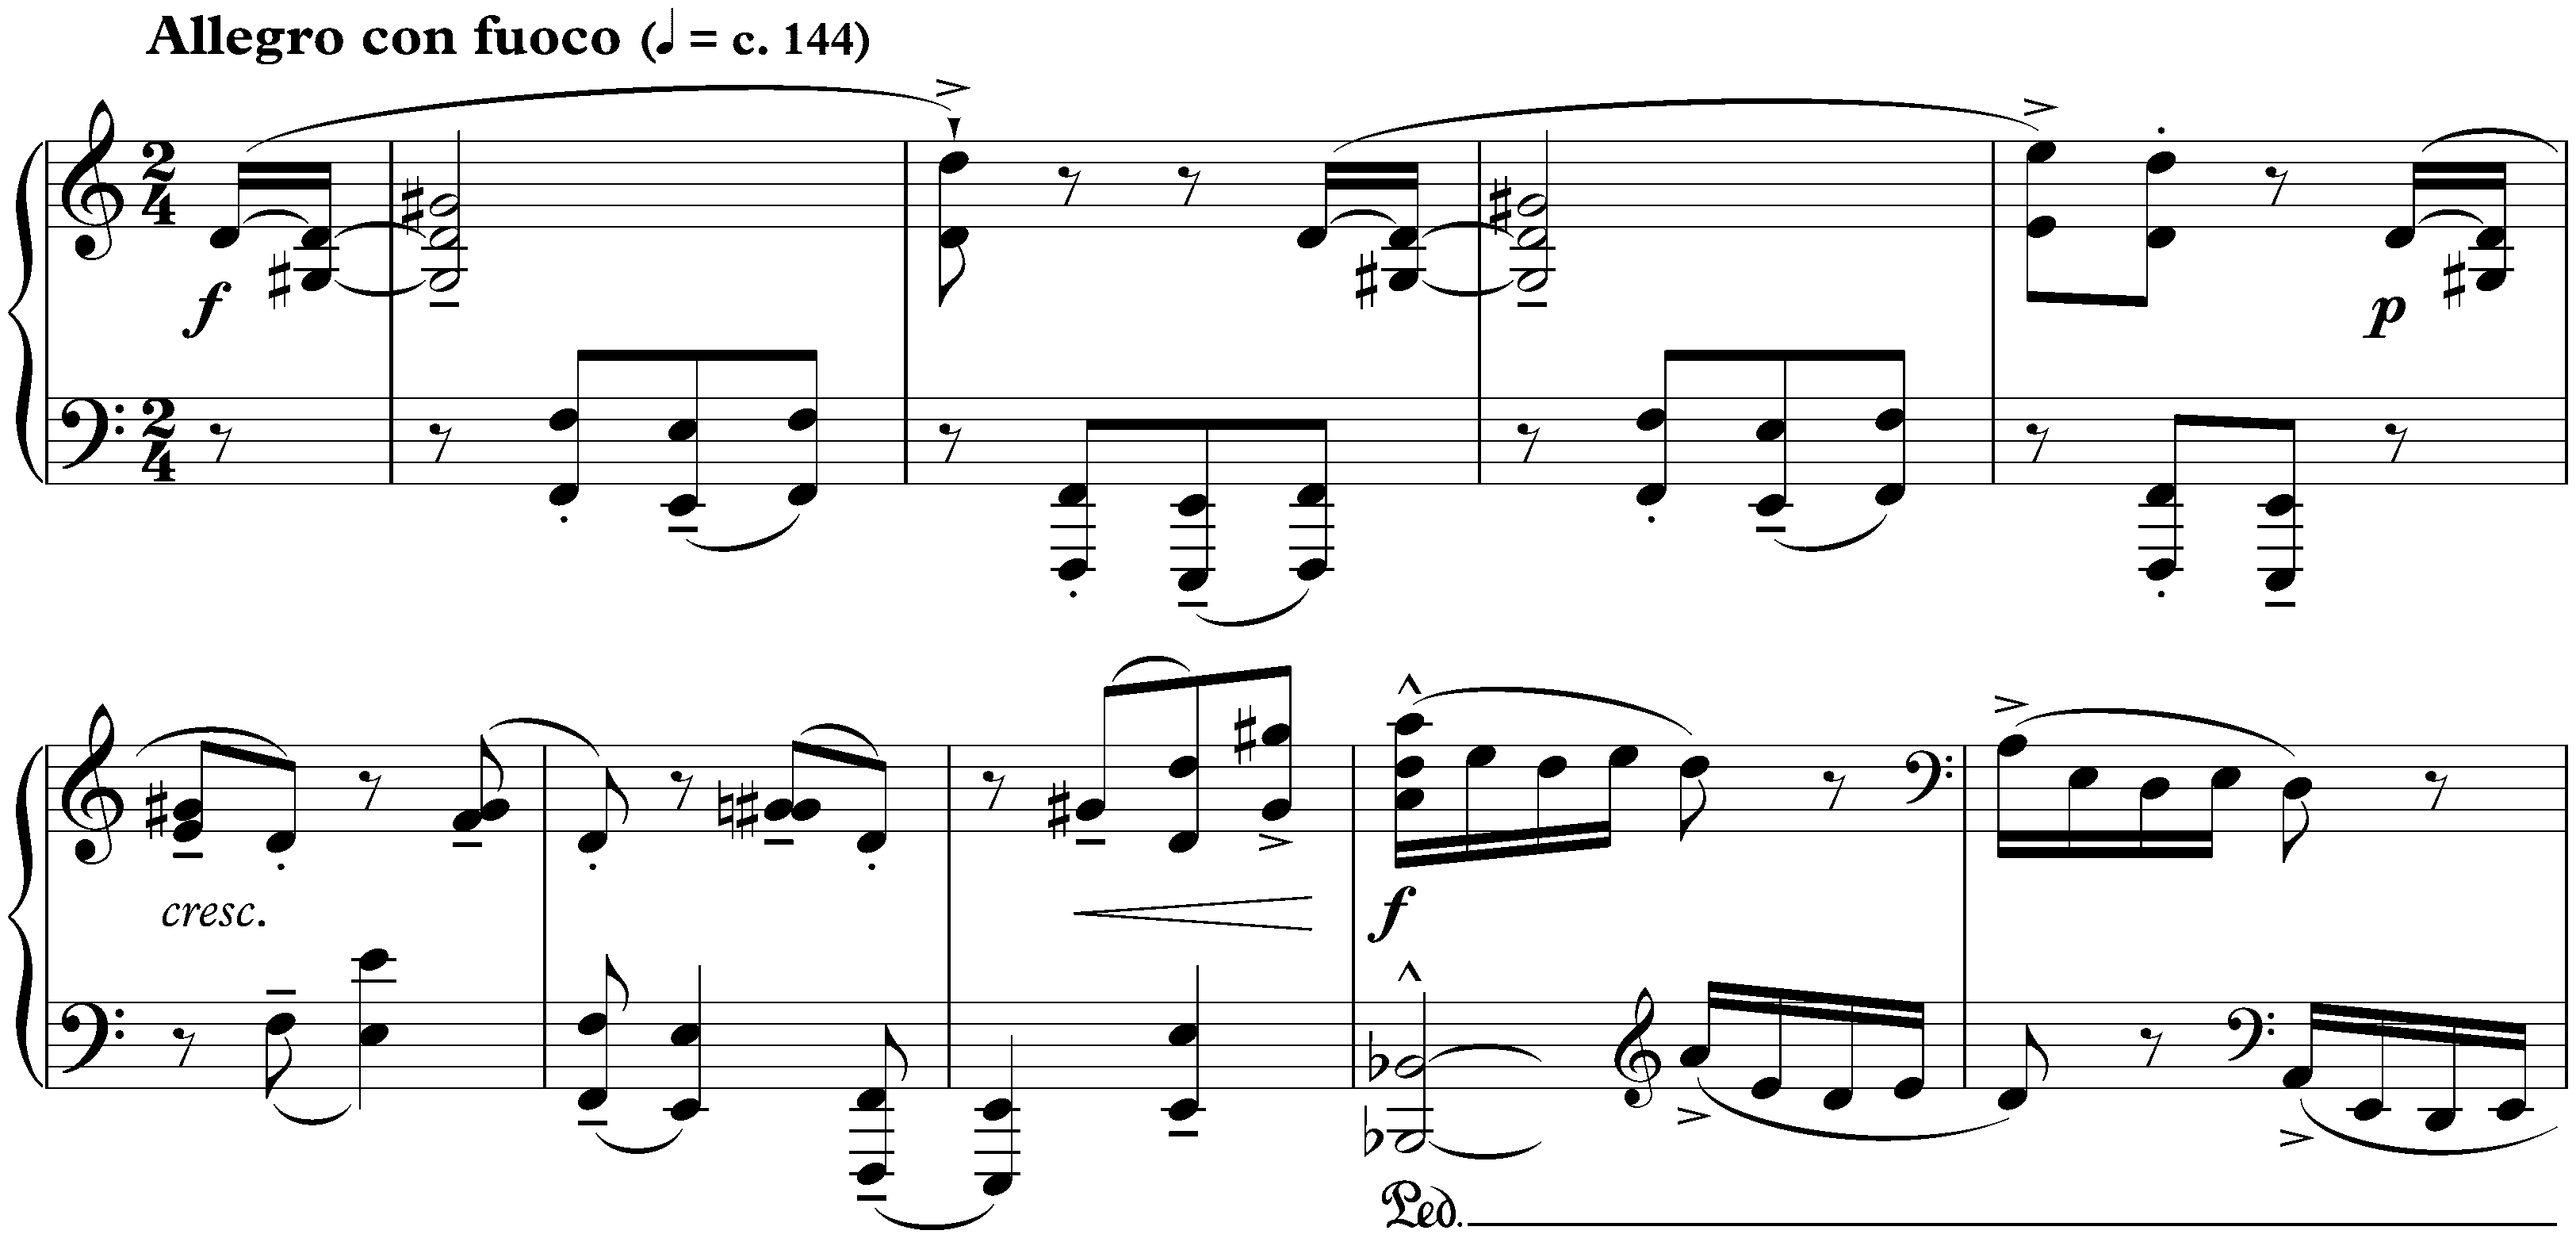 Five Bagatelles, op. 9; 1. Allegro con fuoco